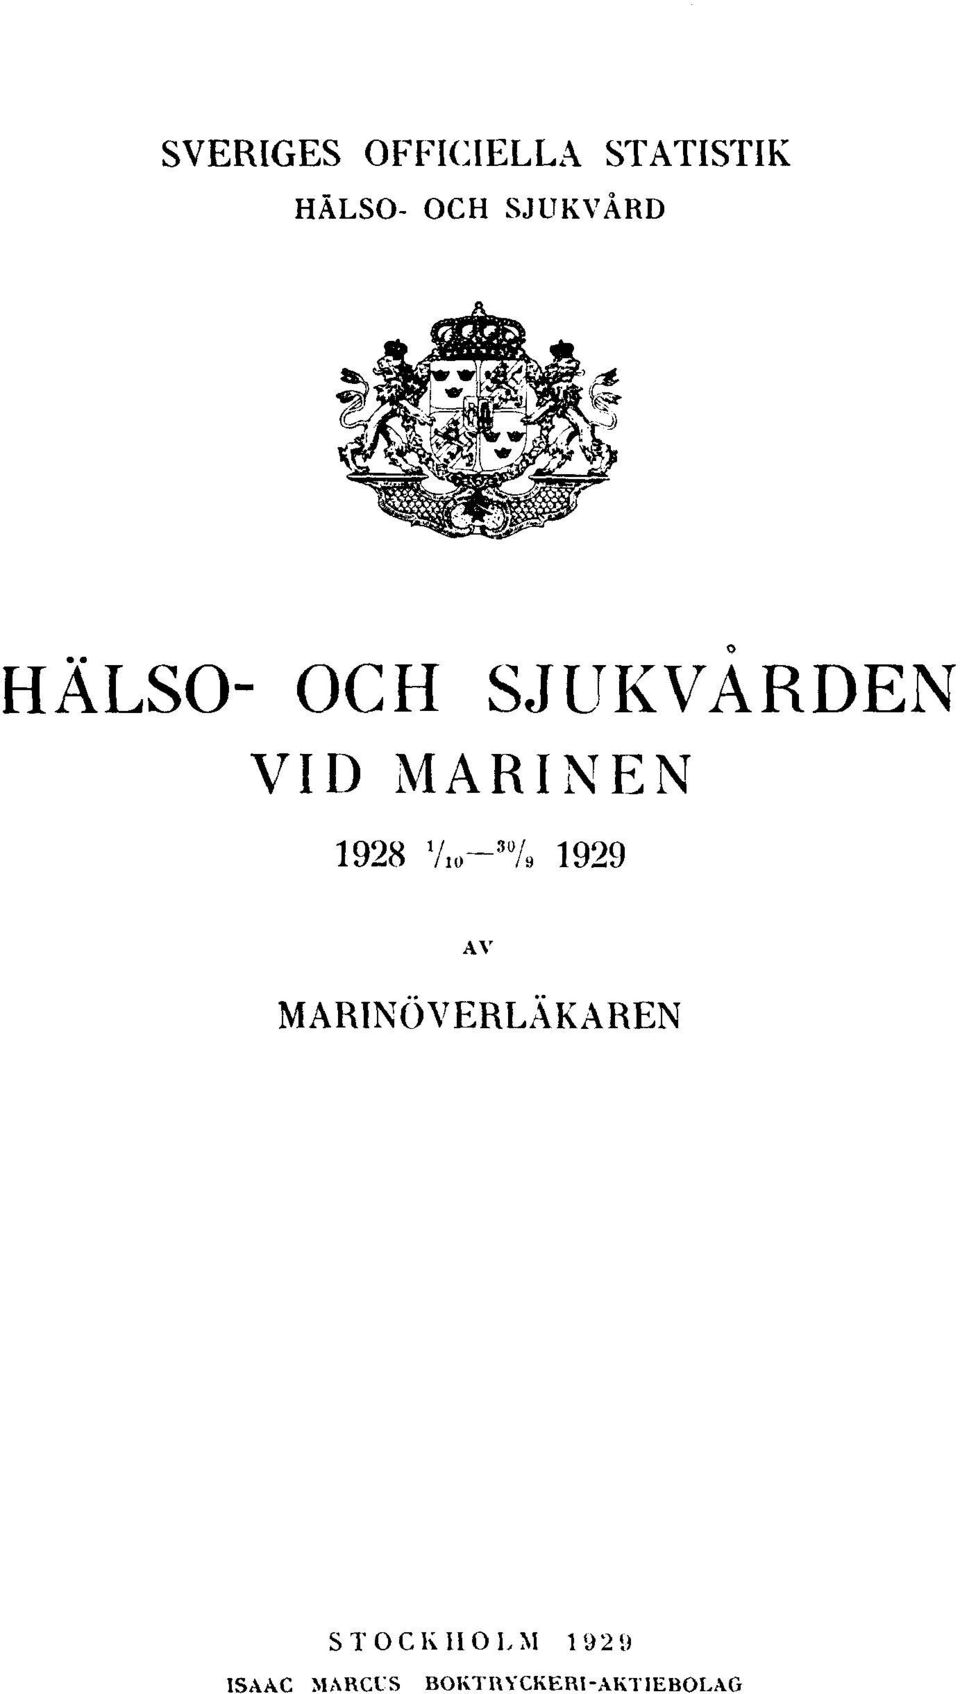 1928 1 / 10-30 / 9 1929 AV MARINÖVERLÄKAREN